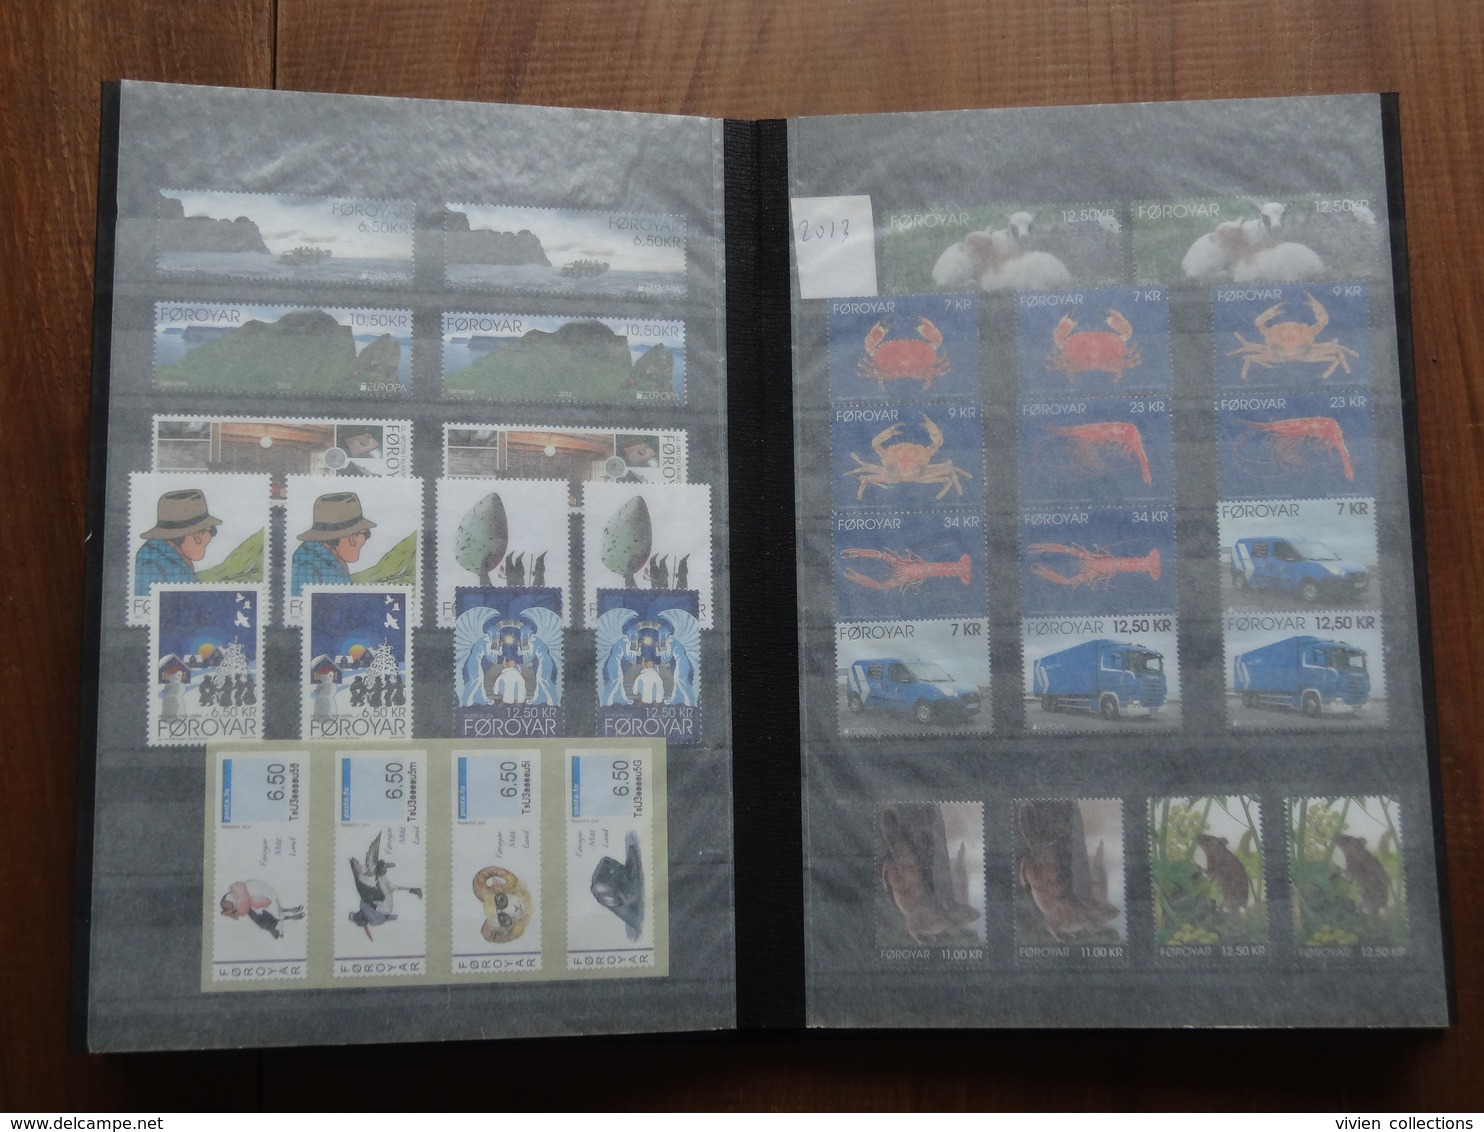 Collection de timbres des iles Féroé (Danemark) 1991 à 2016 en générale x 2 exemplaires neufs dans un album faciale 700€